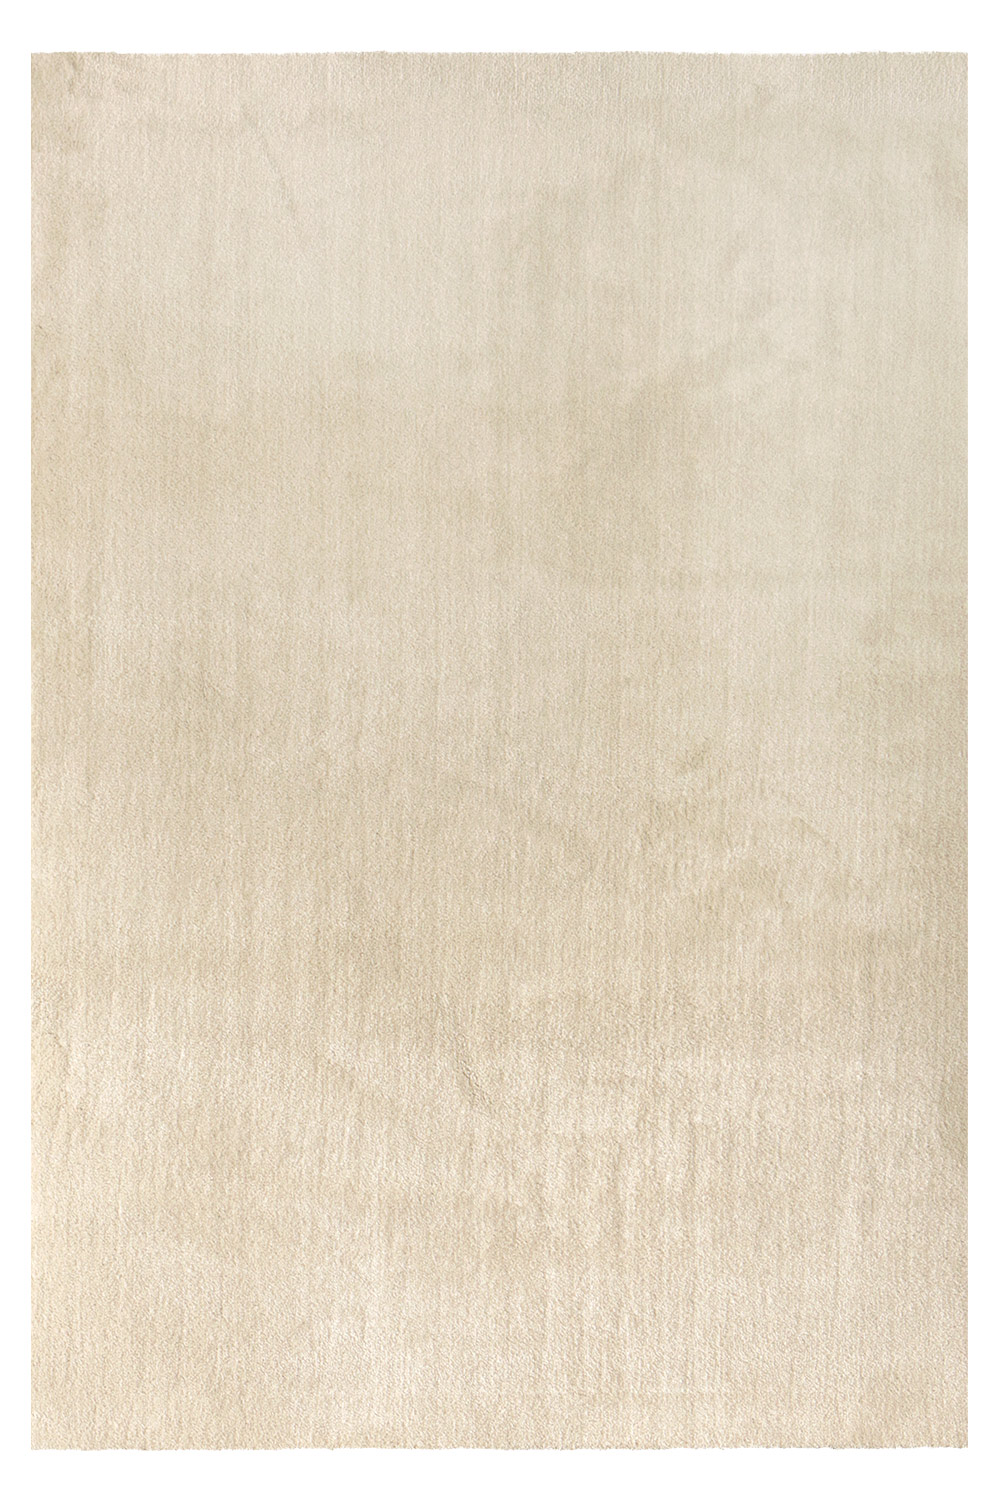 Kusový koberec Labrador 71351 056 Cream 160x230 cm